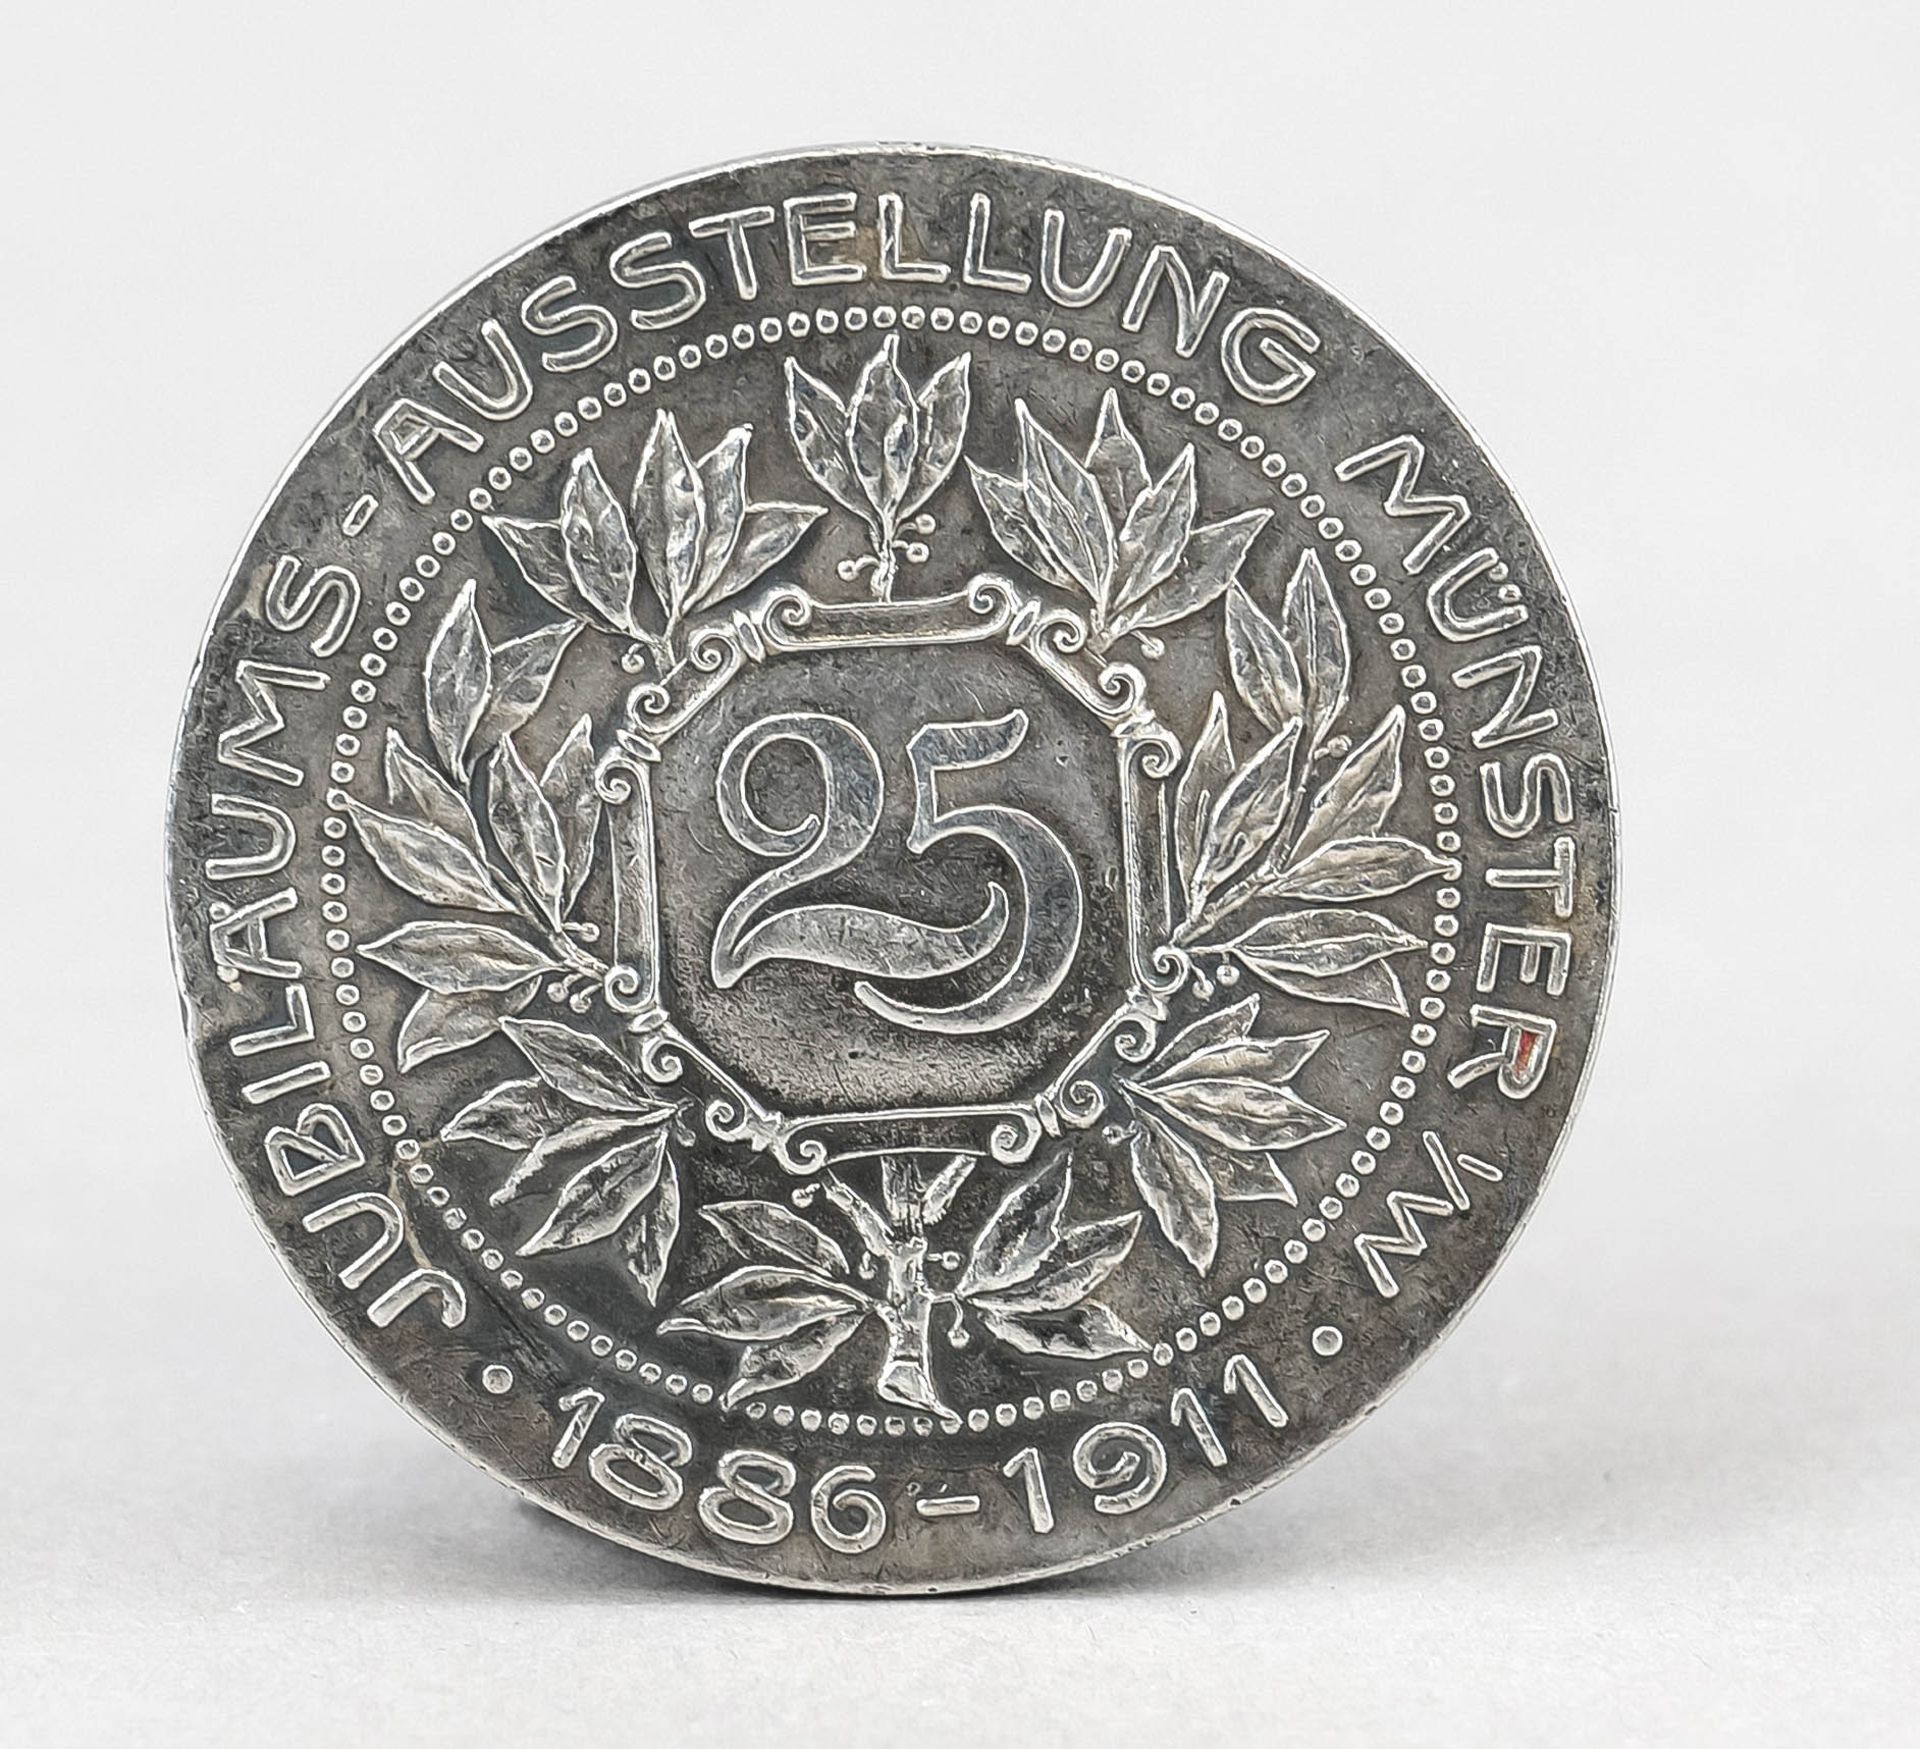 Silver medal 25th anniversary exhibition Münster - Verband Westfälischer Schumacher Innung 1886- - Image 2 of 2